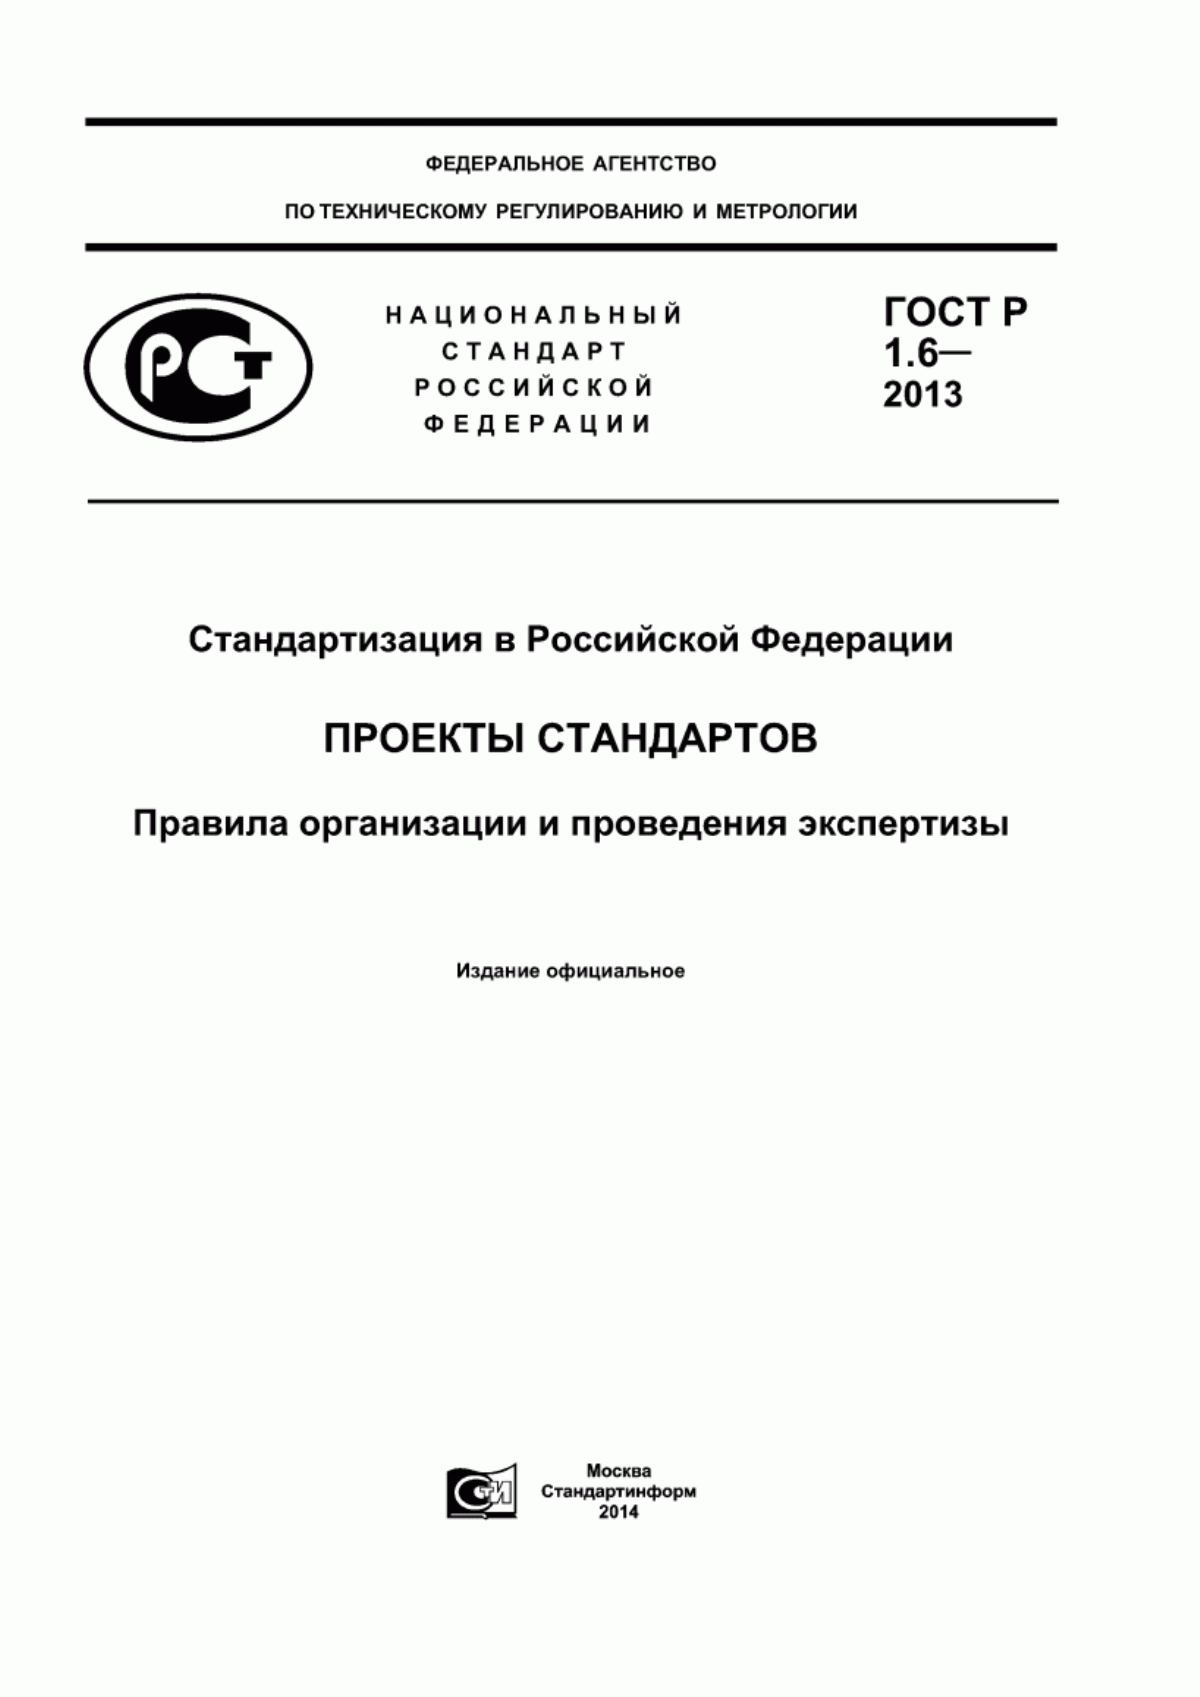 ГОСТ Р 1.6-2013 Стандартизация в Российской Федерации. Проекты стандартов. Правила организации и проведения экспертизы